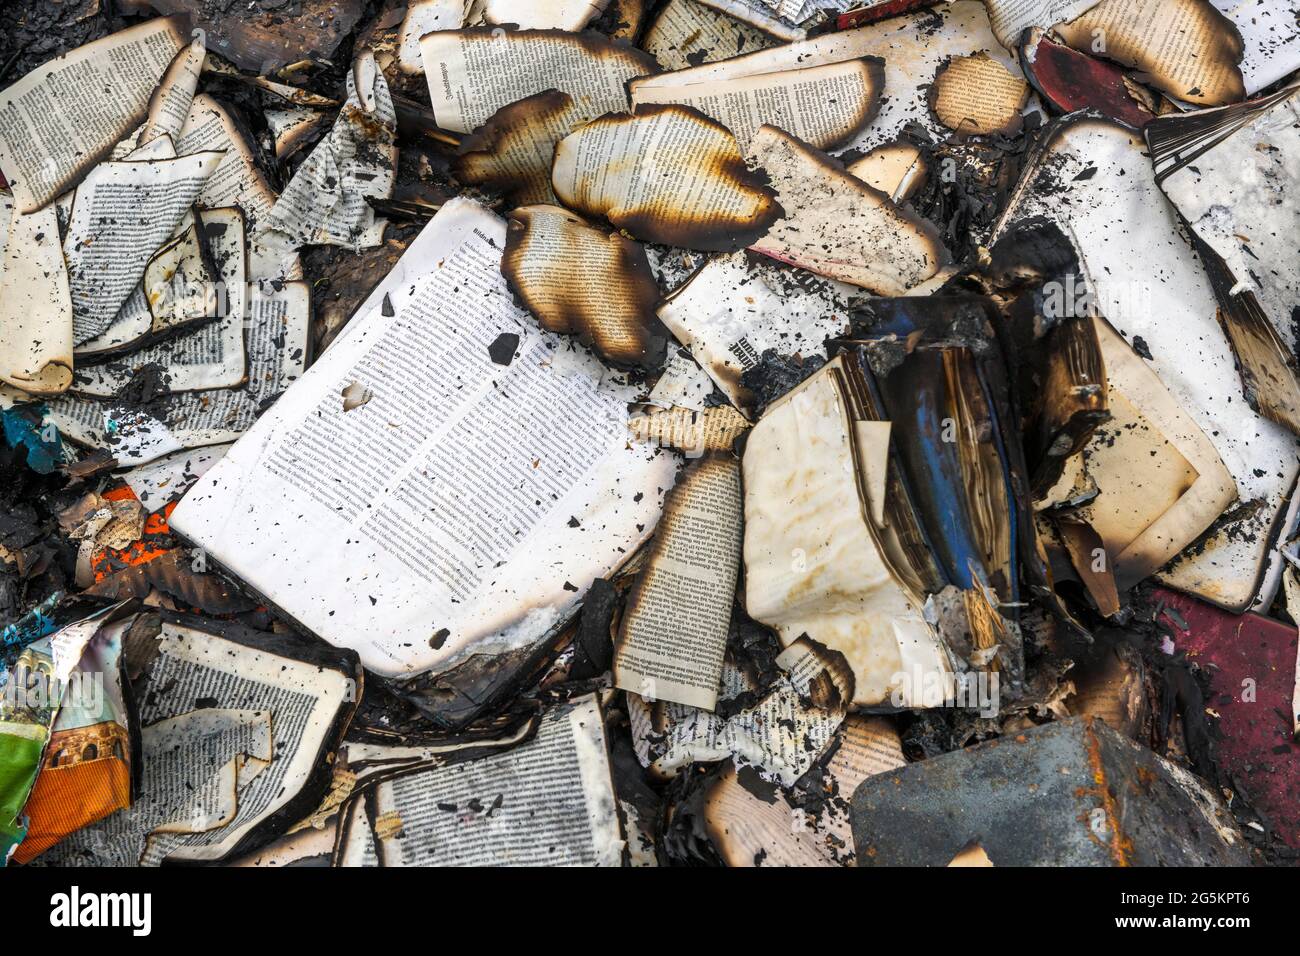 Restes charrés de livres après Arson, Allemagne, Europe Banque D'Images